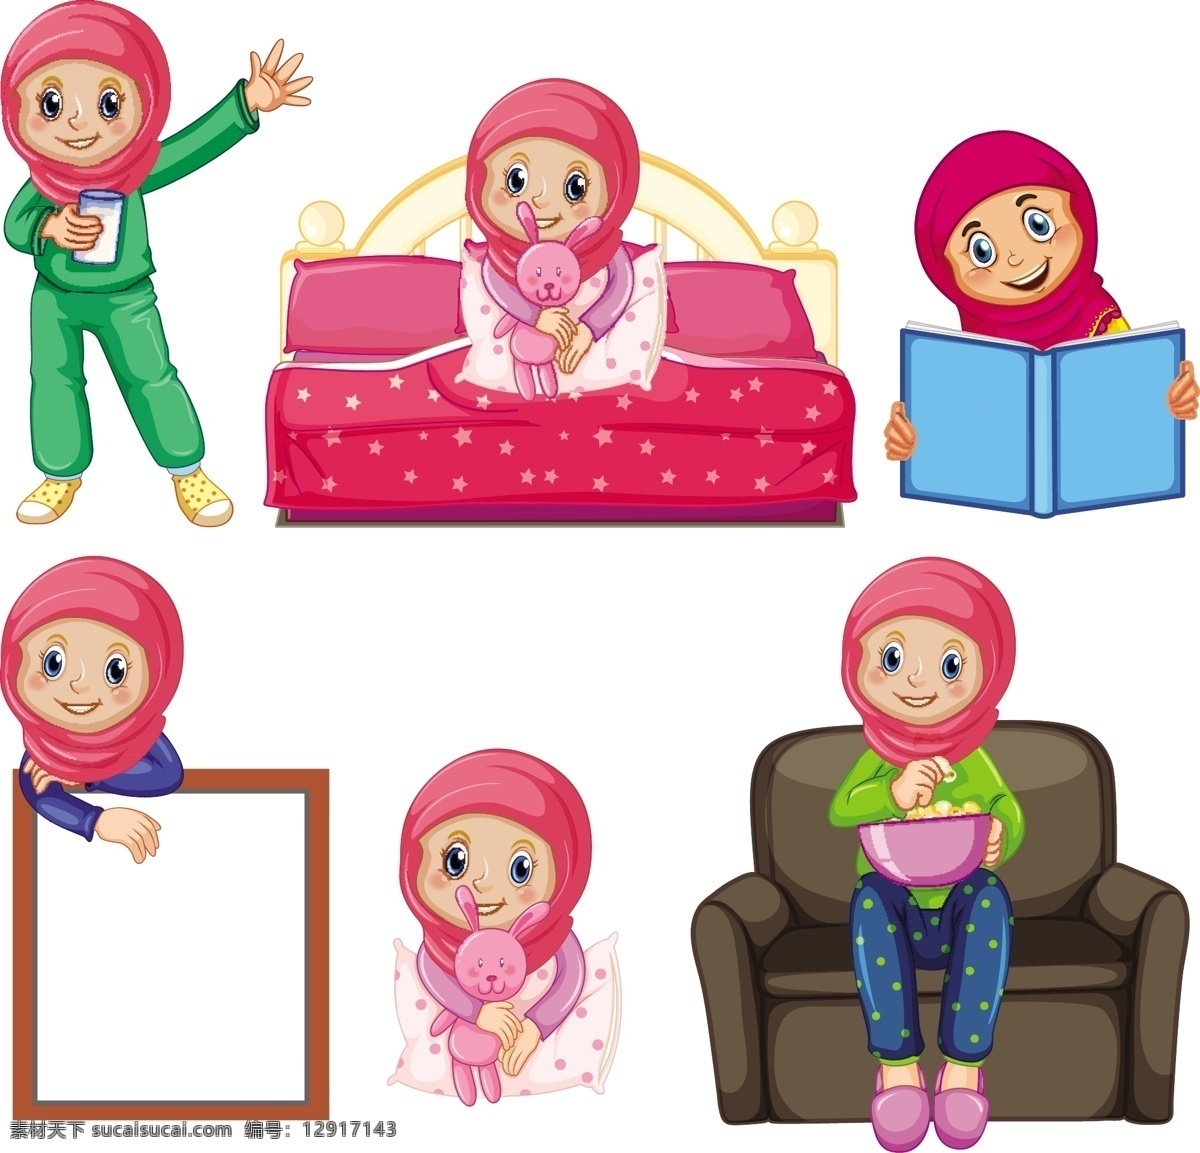 穆斯林儿童 民族 阿拉伯人 卡通人物 手绘人物 儿童 小孩 国外 节日 宗教信仰 卡通设计